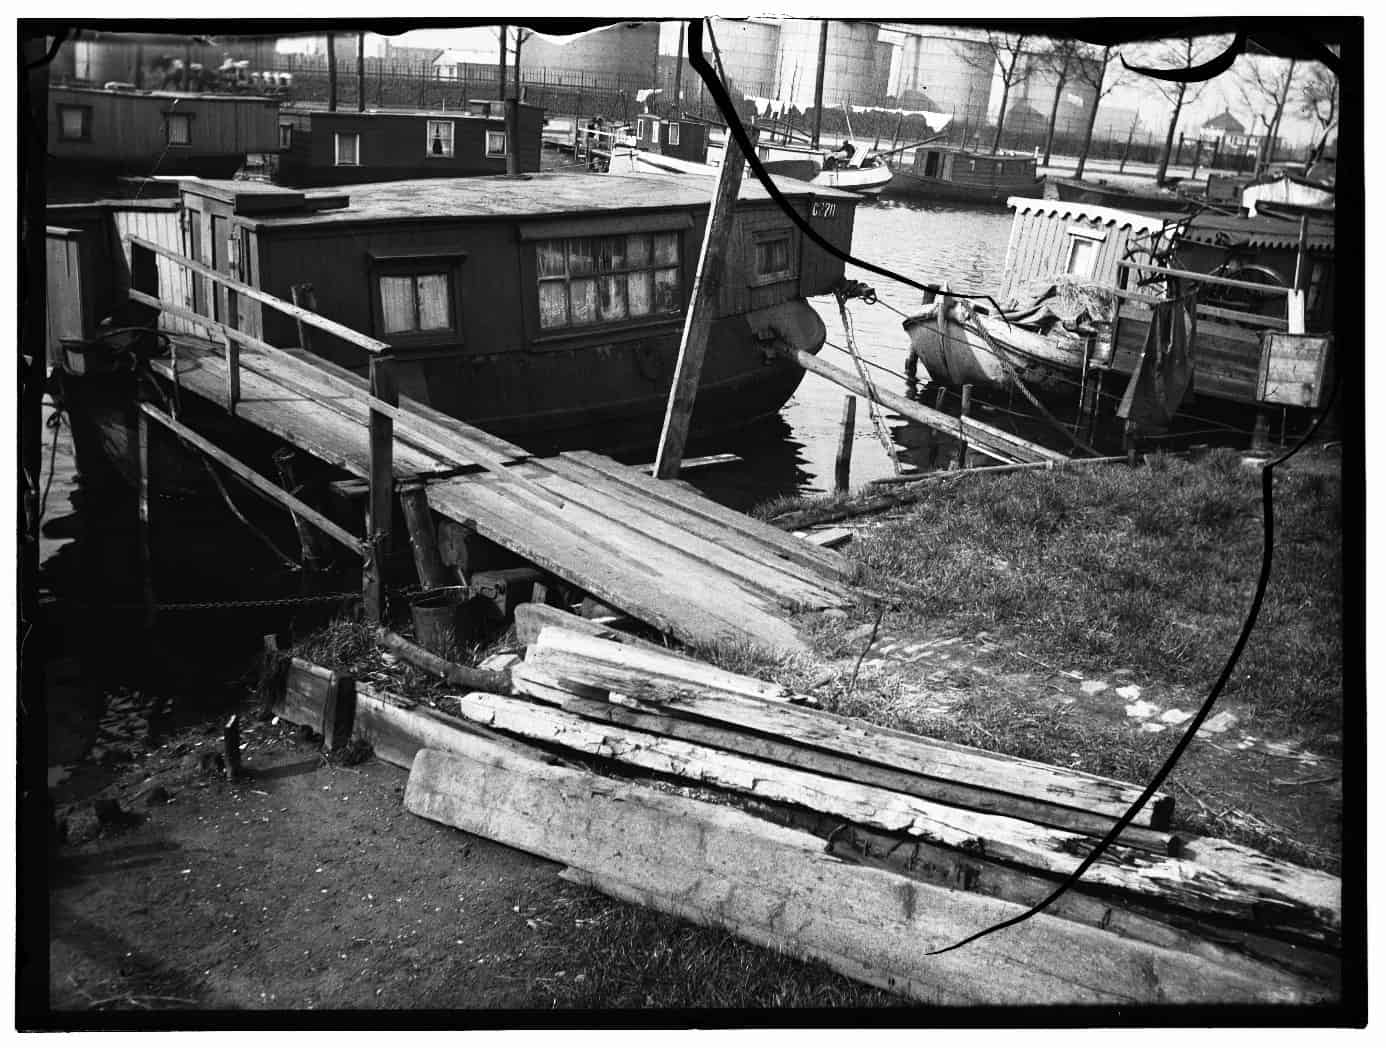 Woonboot aan de Grasweg, 1932. Stadsarchief Amsterdam